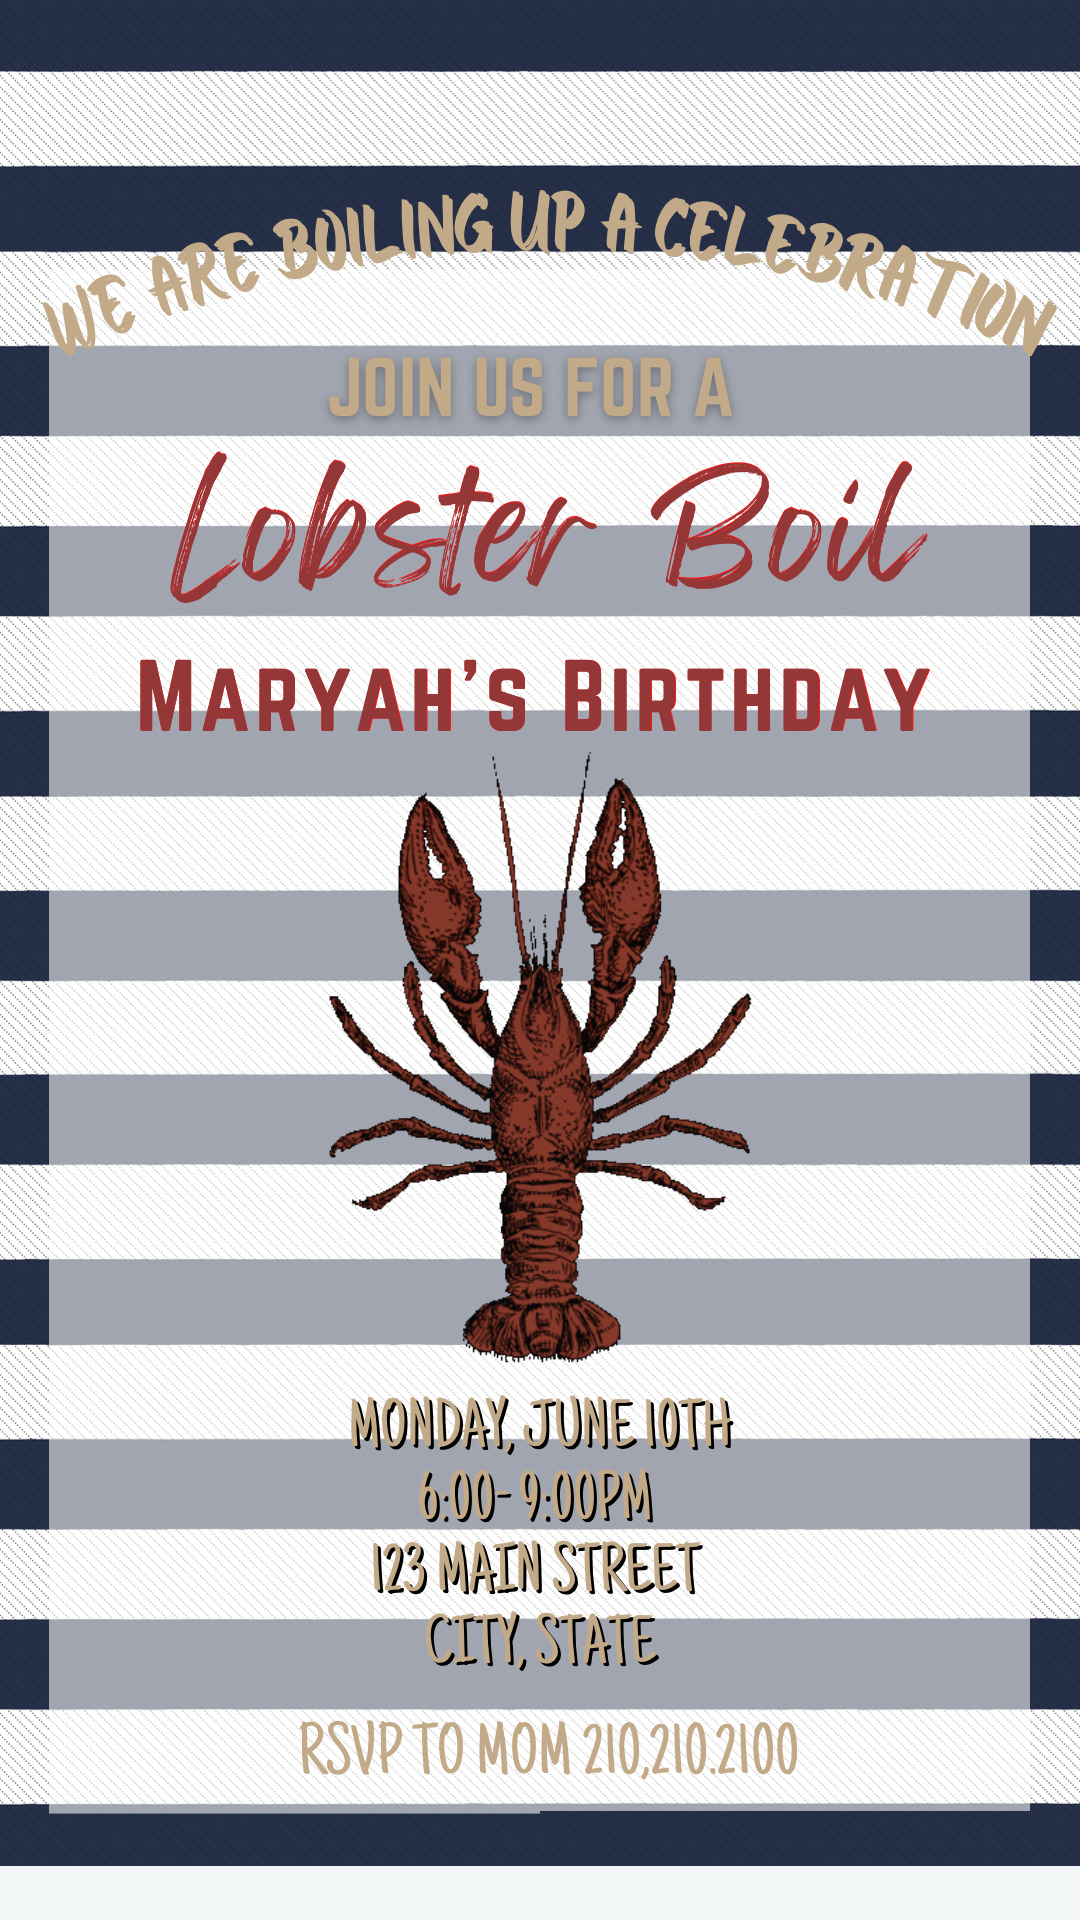 Lobster Roast Video Invitation, Seafood Boil Invite, Lobster Bake